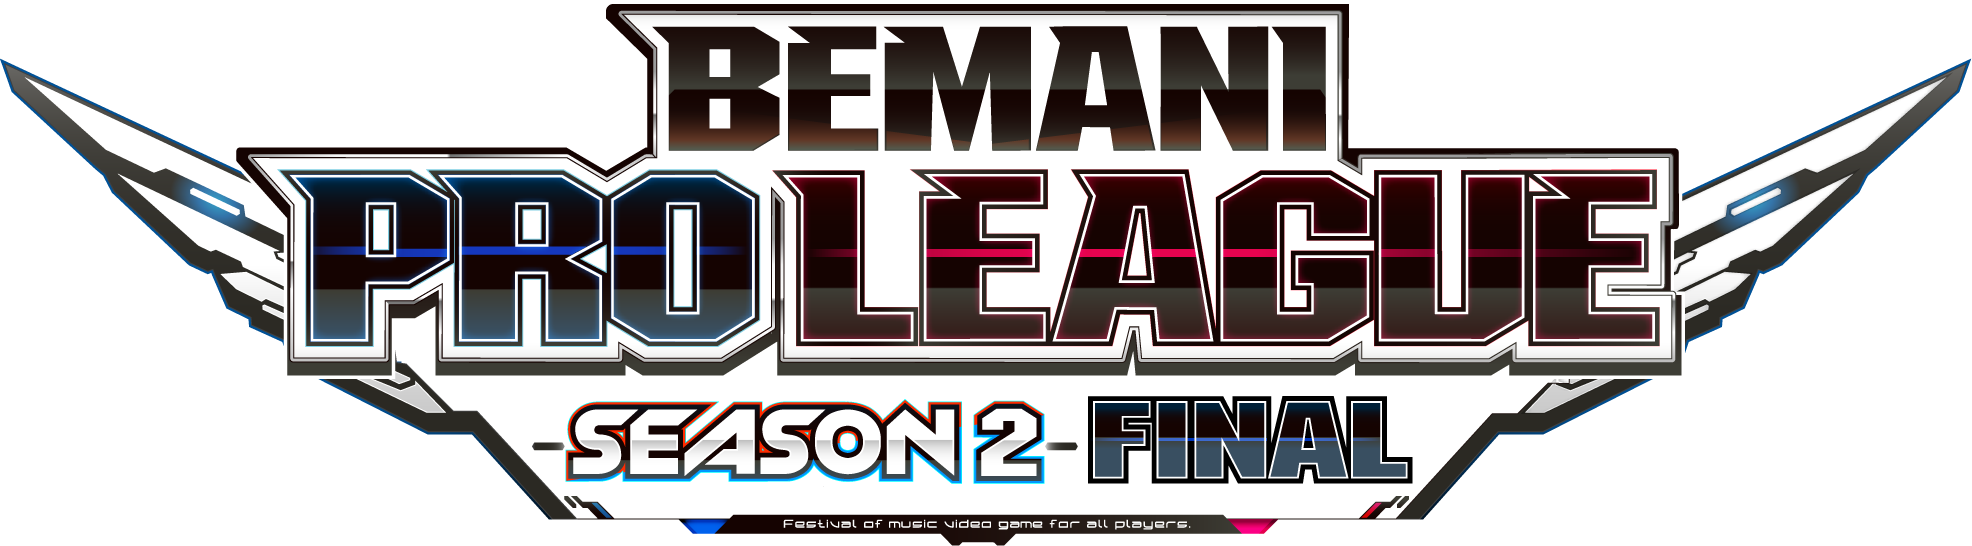 BEMANI PRO LEAGUE -SEASON 2- beatmania IIDX』ファイナルが開催優勝